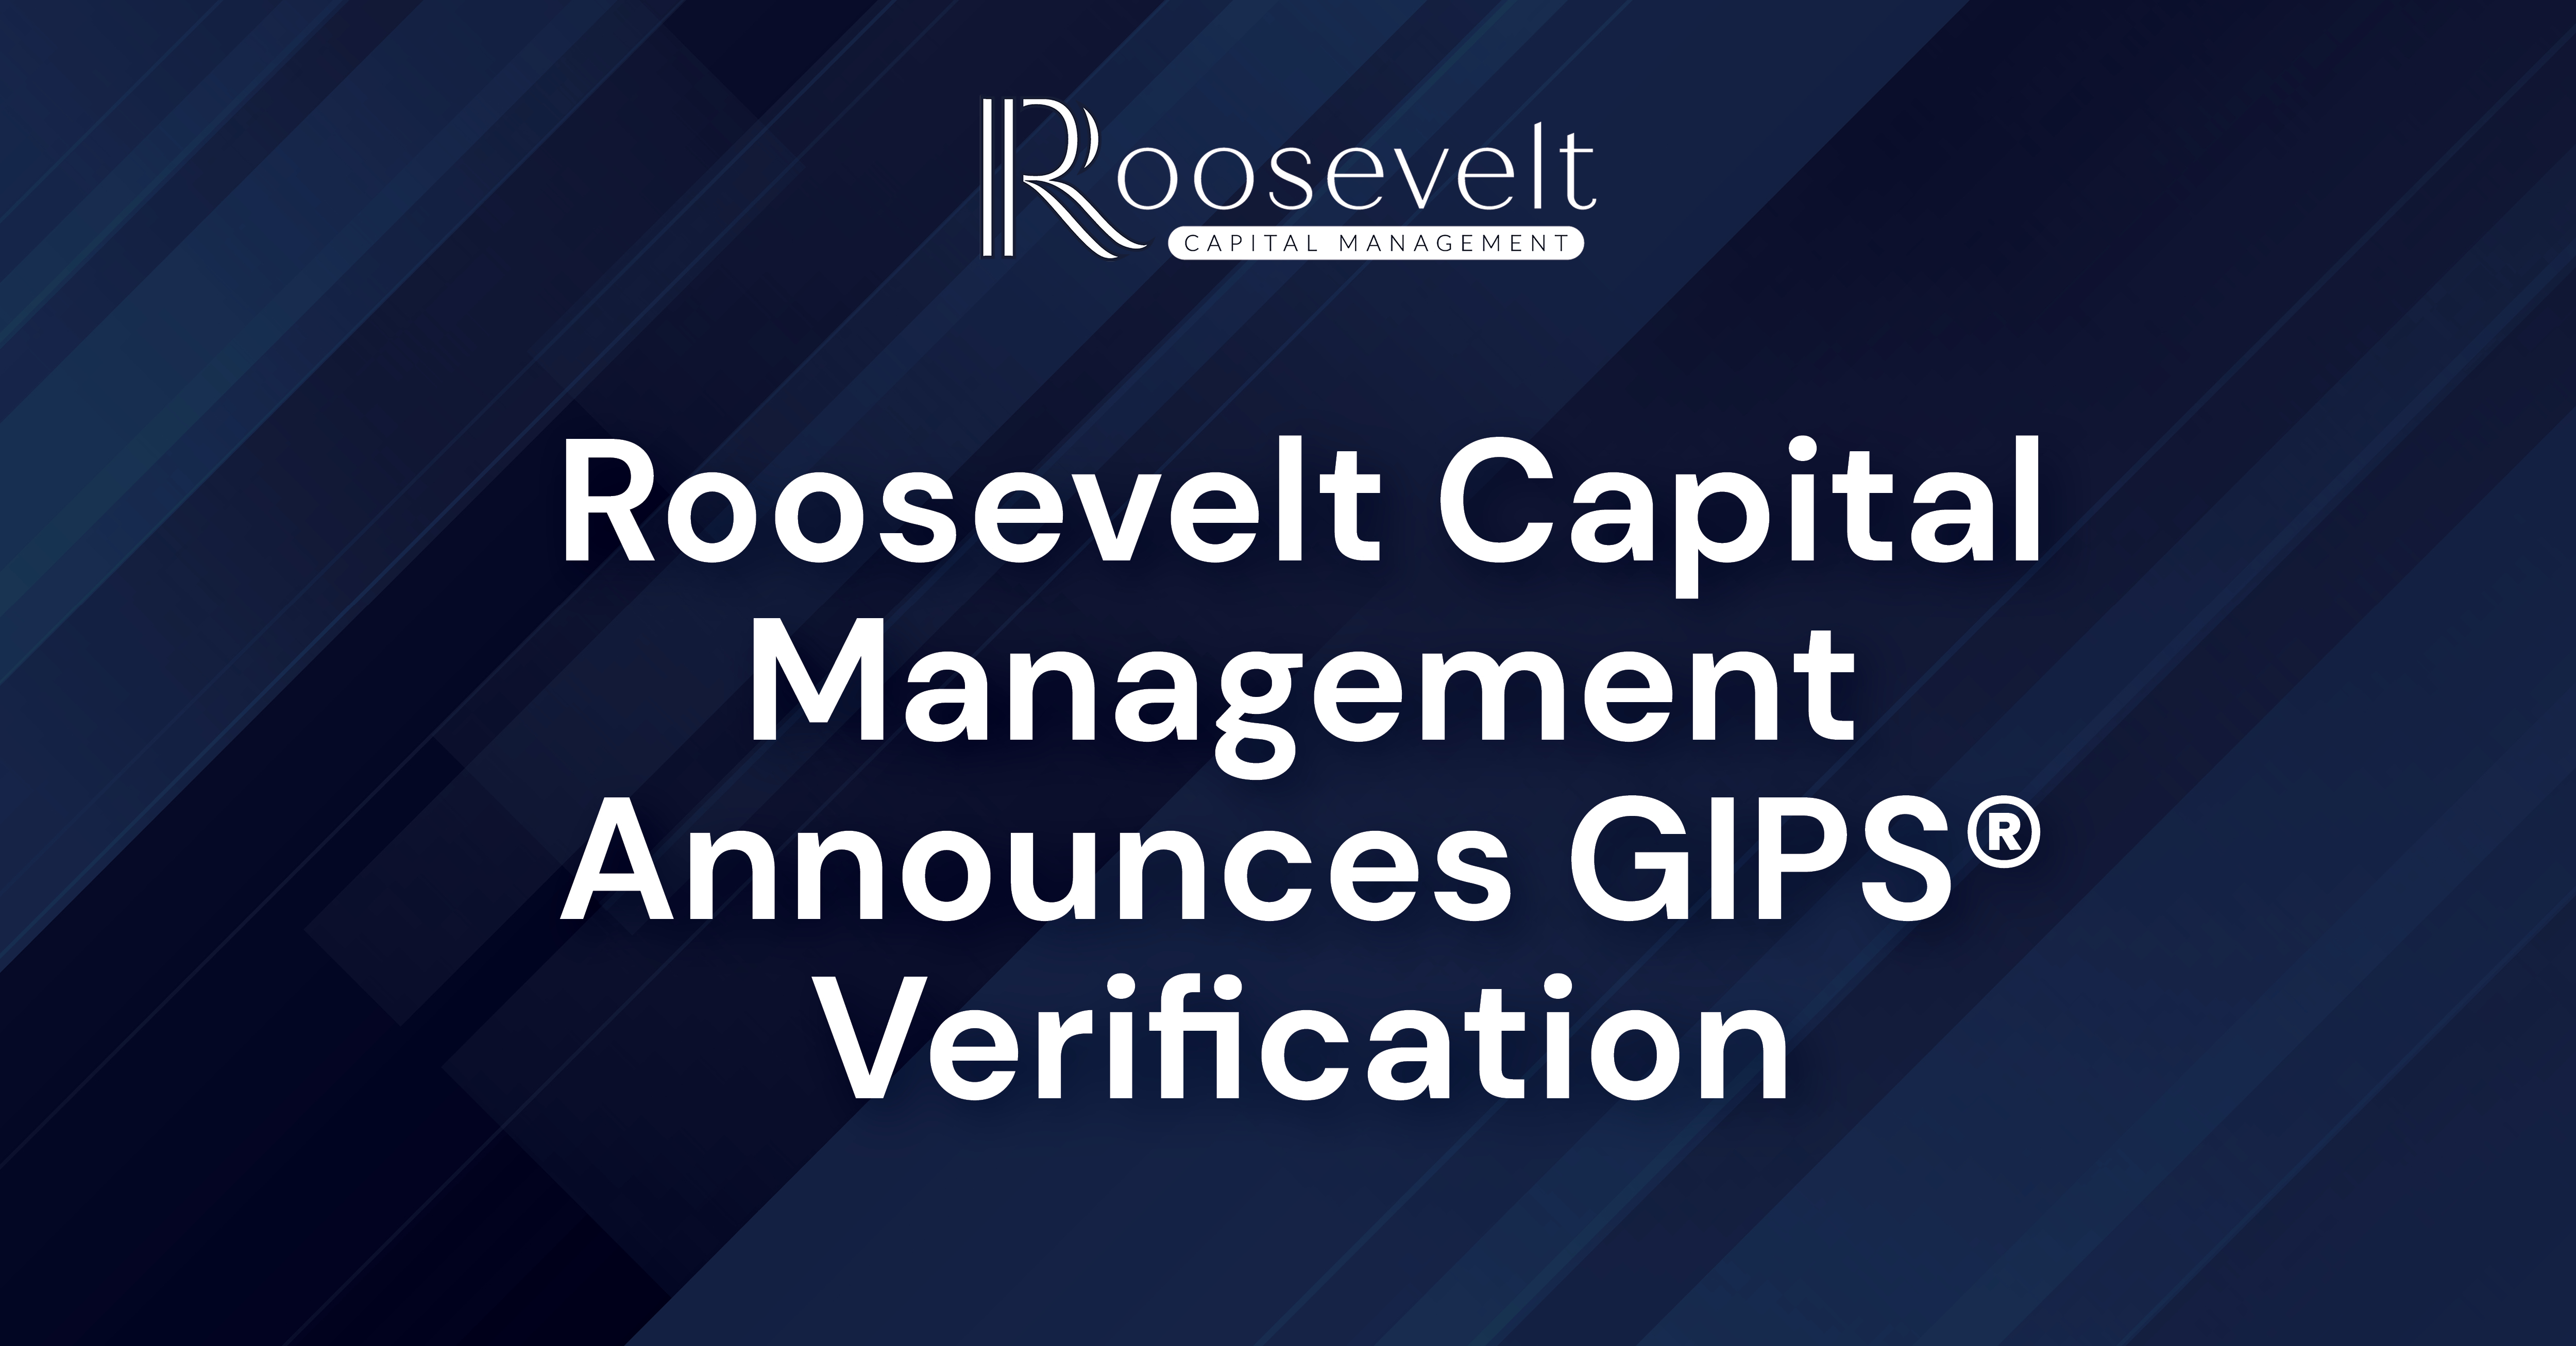 Roosevelt Capital Management Announces GIPS® Verification